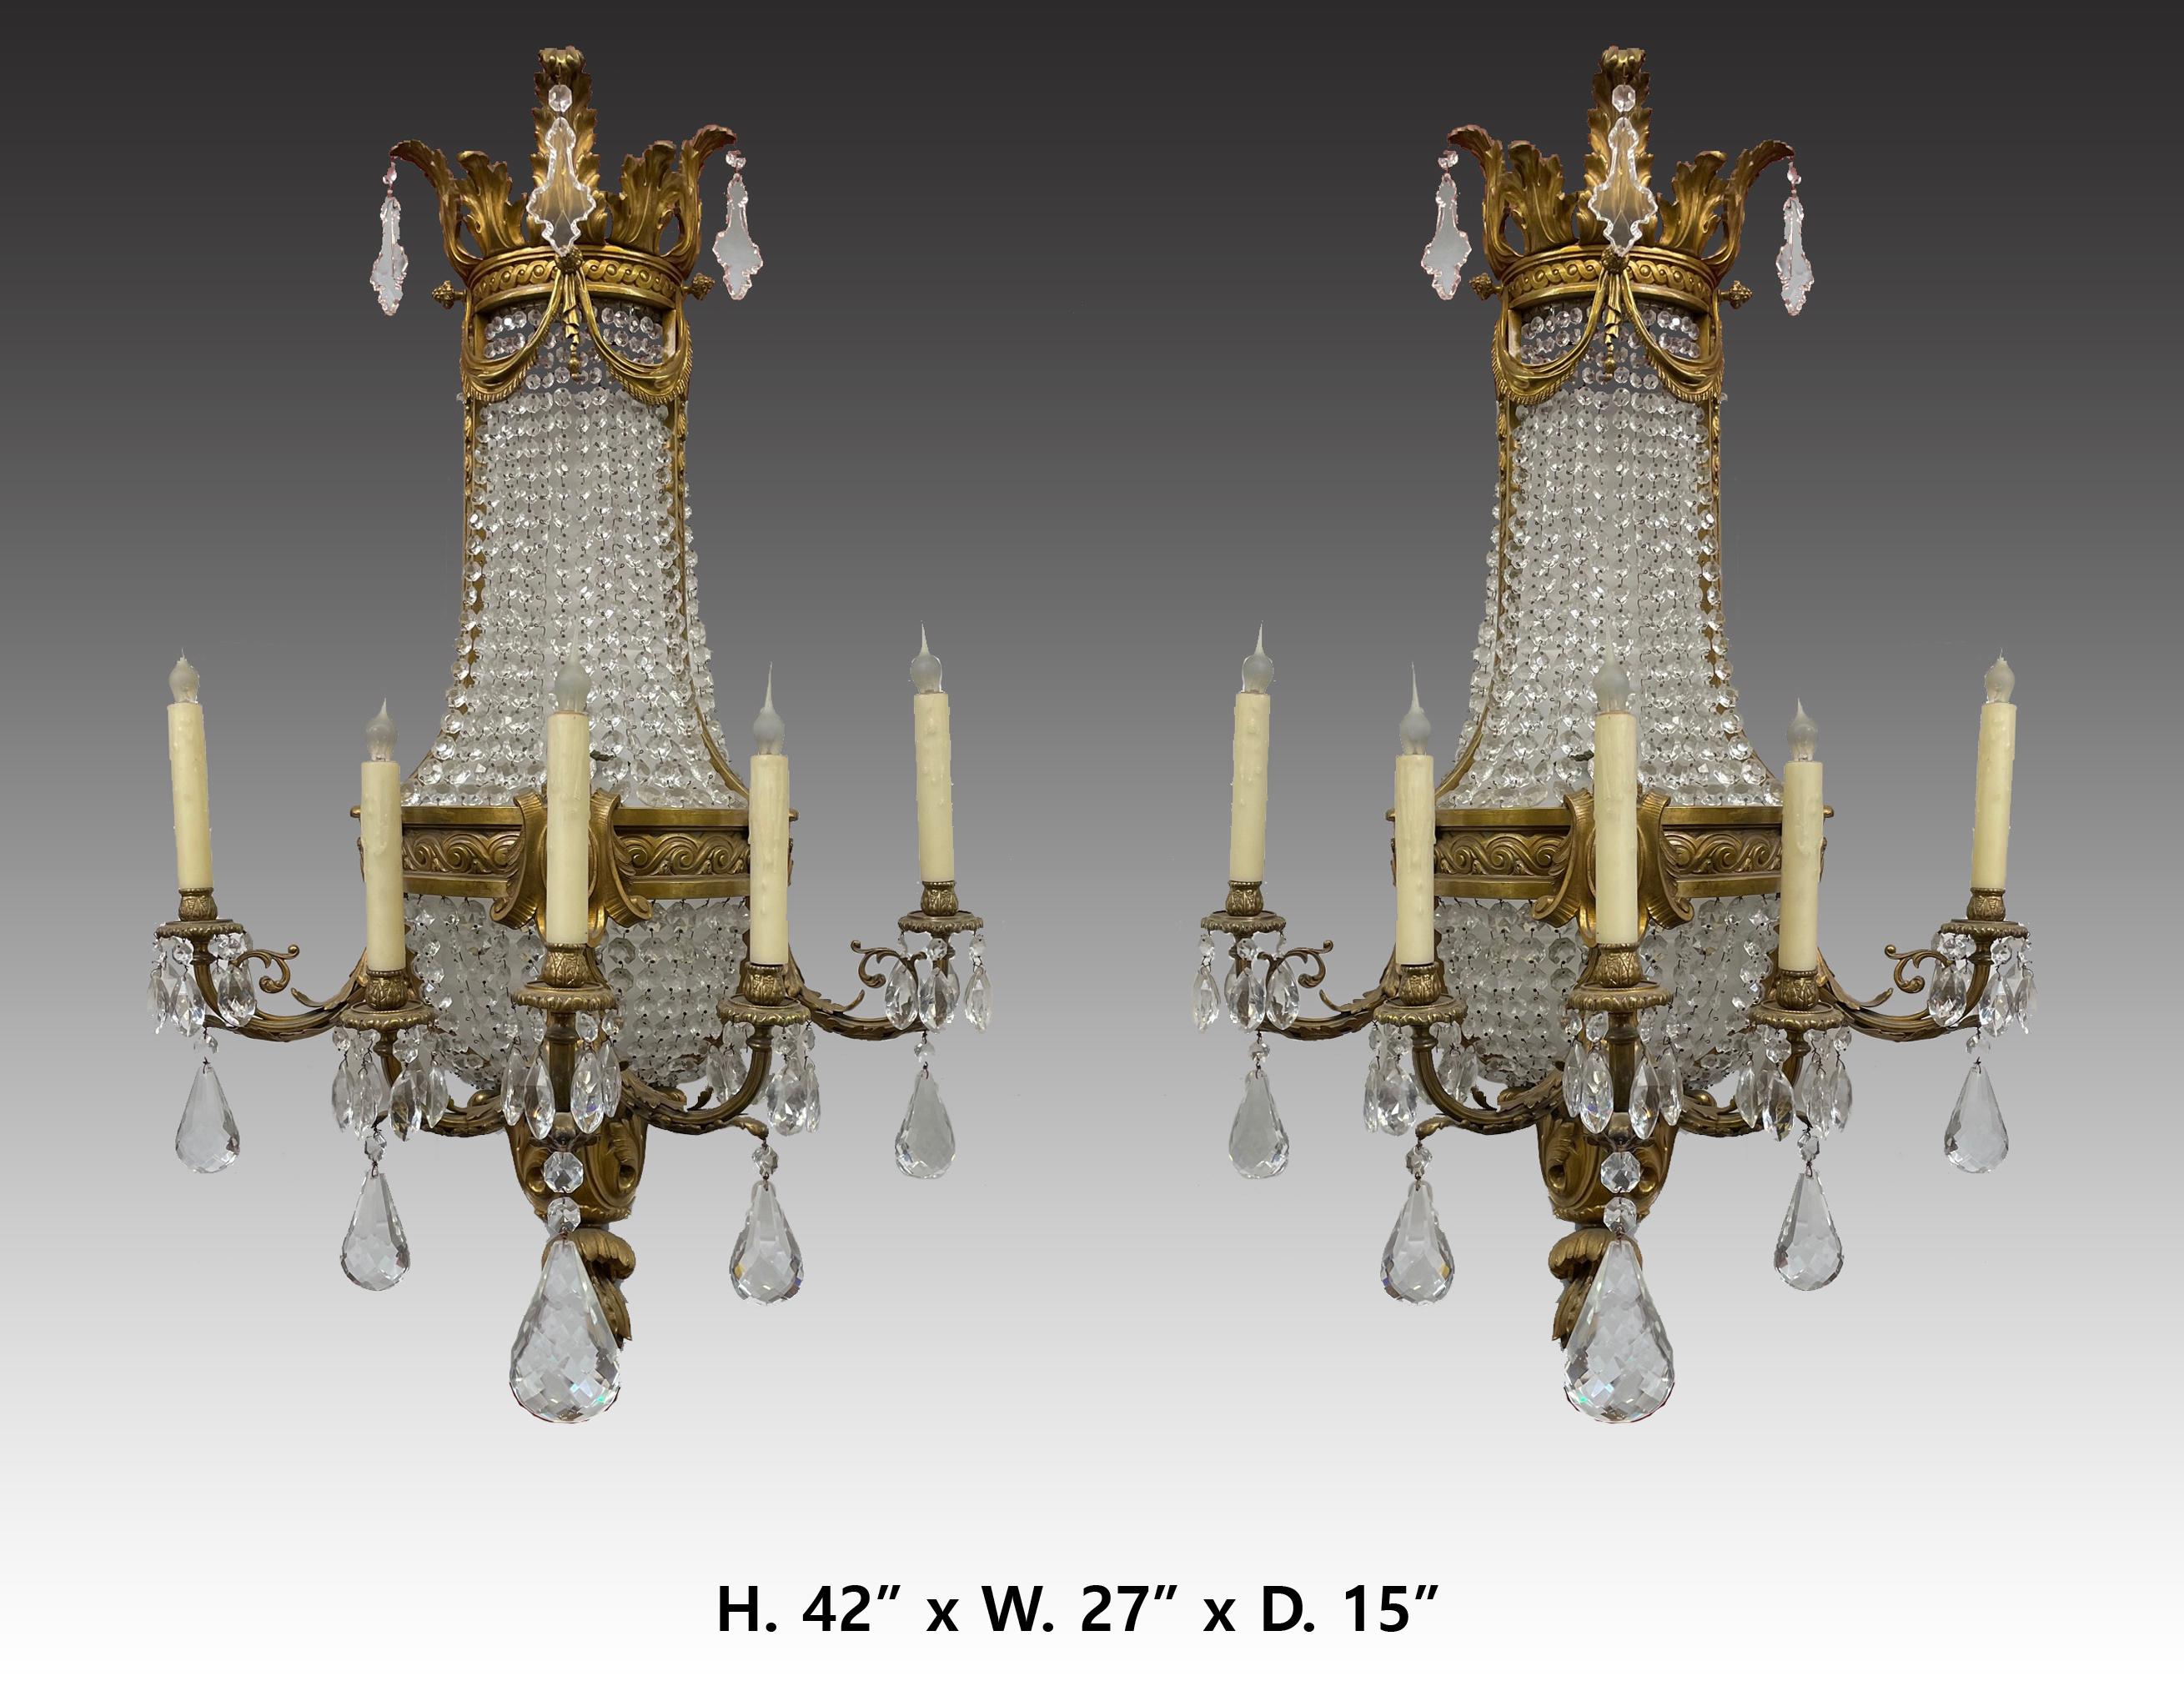 Magnifique grande paire d'appliques à cinq lumières de style Louis XV en bronze doré et cristal taillé.
Une attention méticuleuse a été accordée à chaque détail, les appliques sont magnifiquement proportionnées et font une grande déclaration.